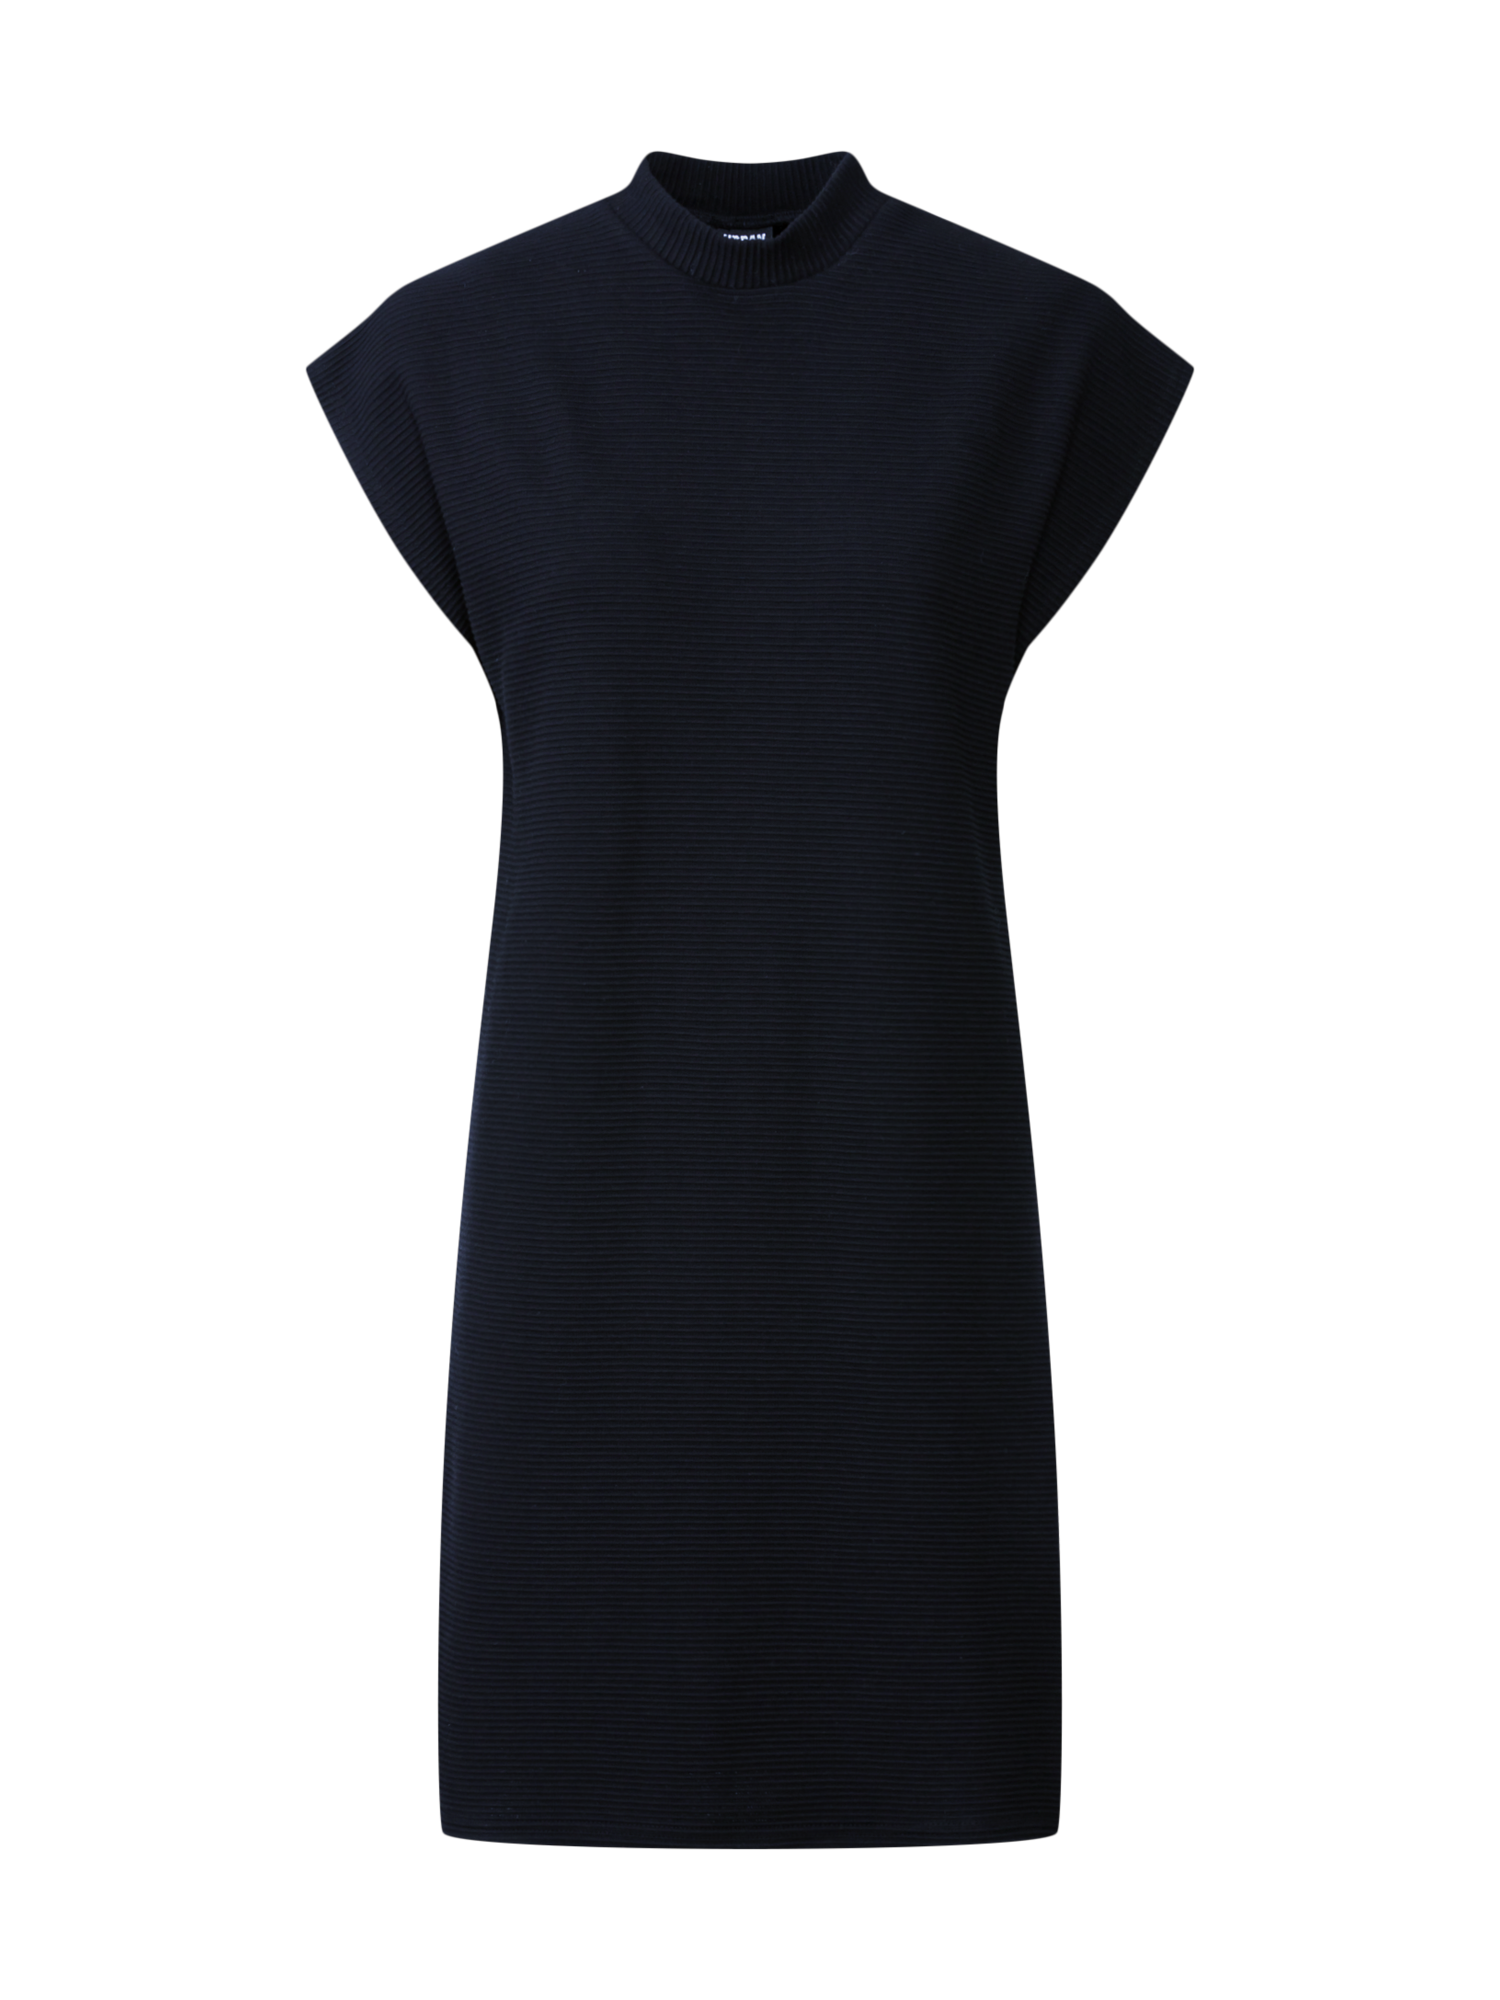 Odzież Sukienki Urban Classics Sukienka w kolorze Czarnym 